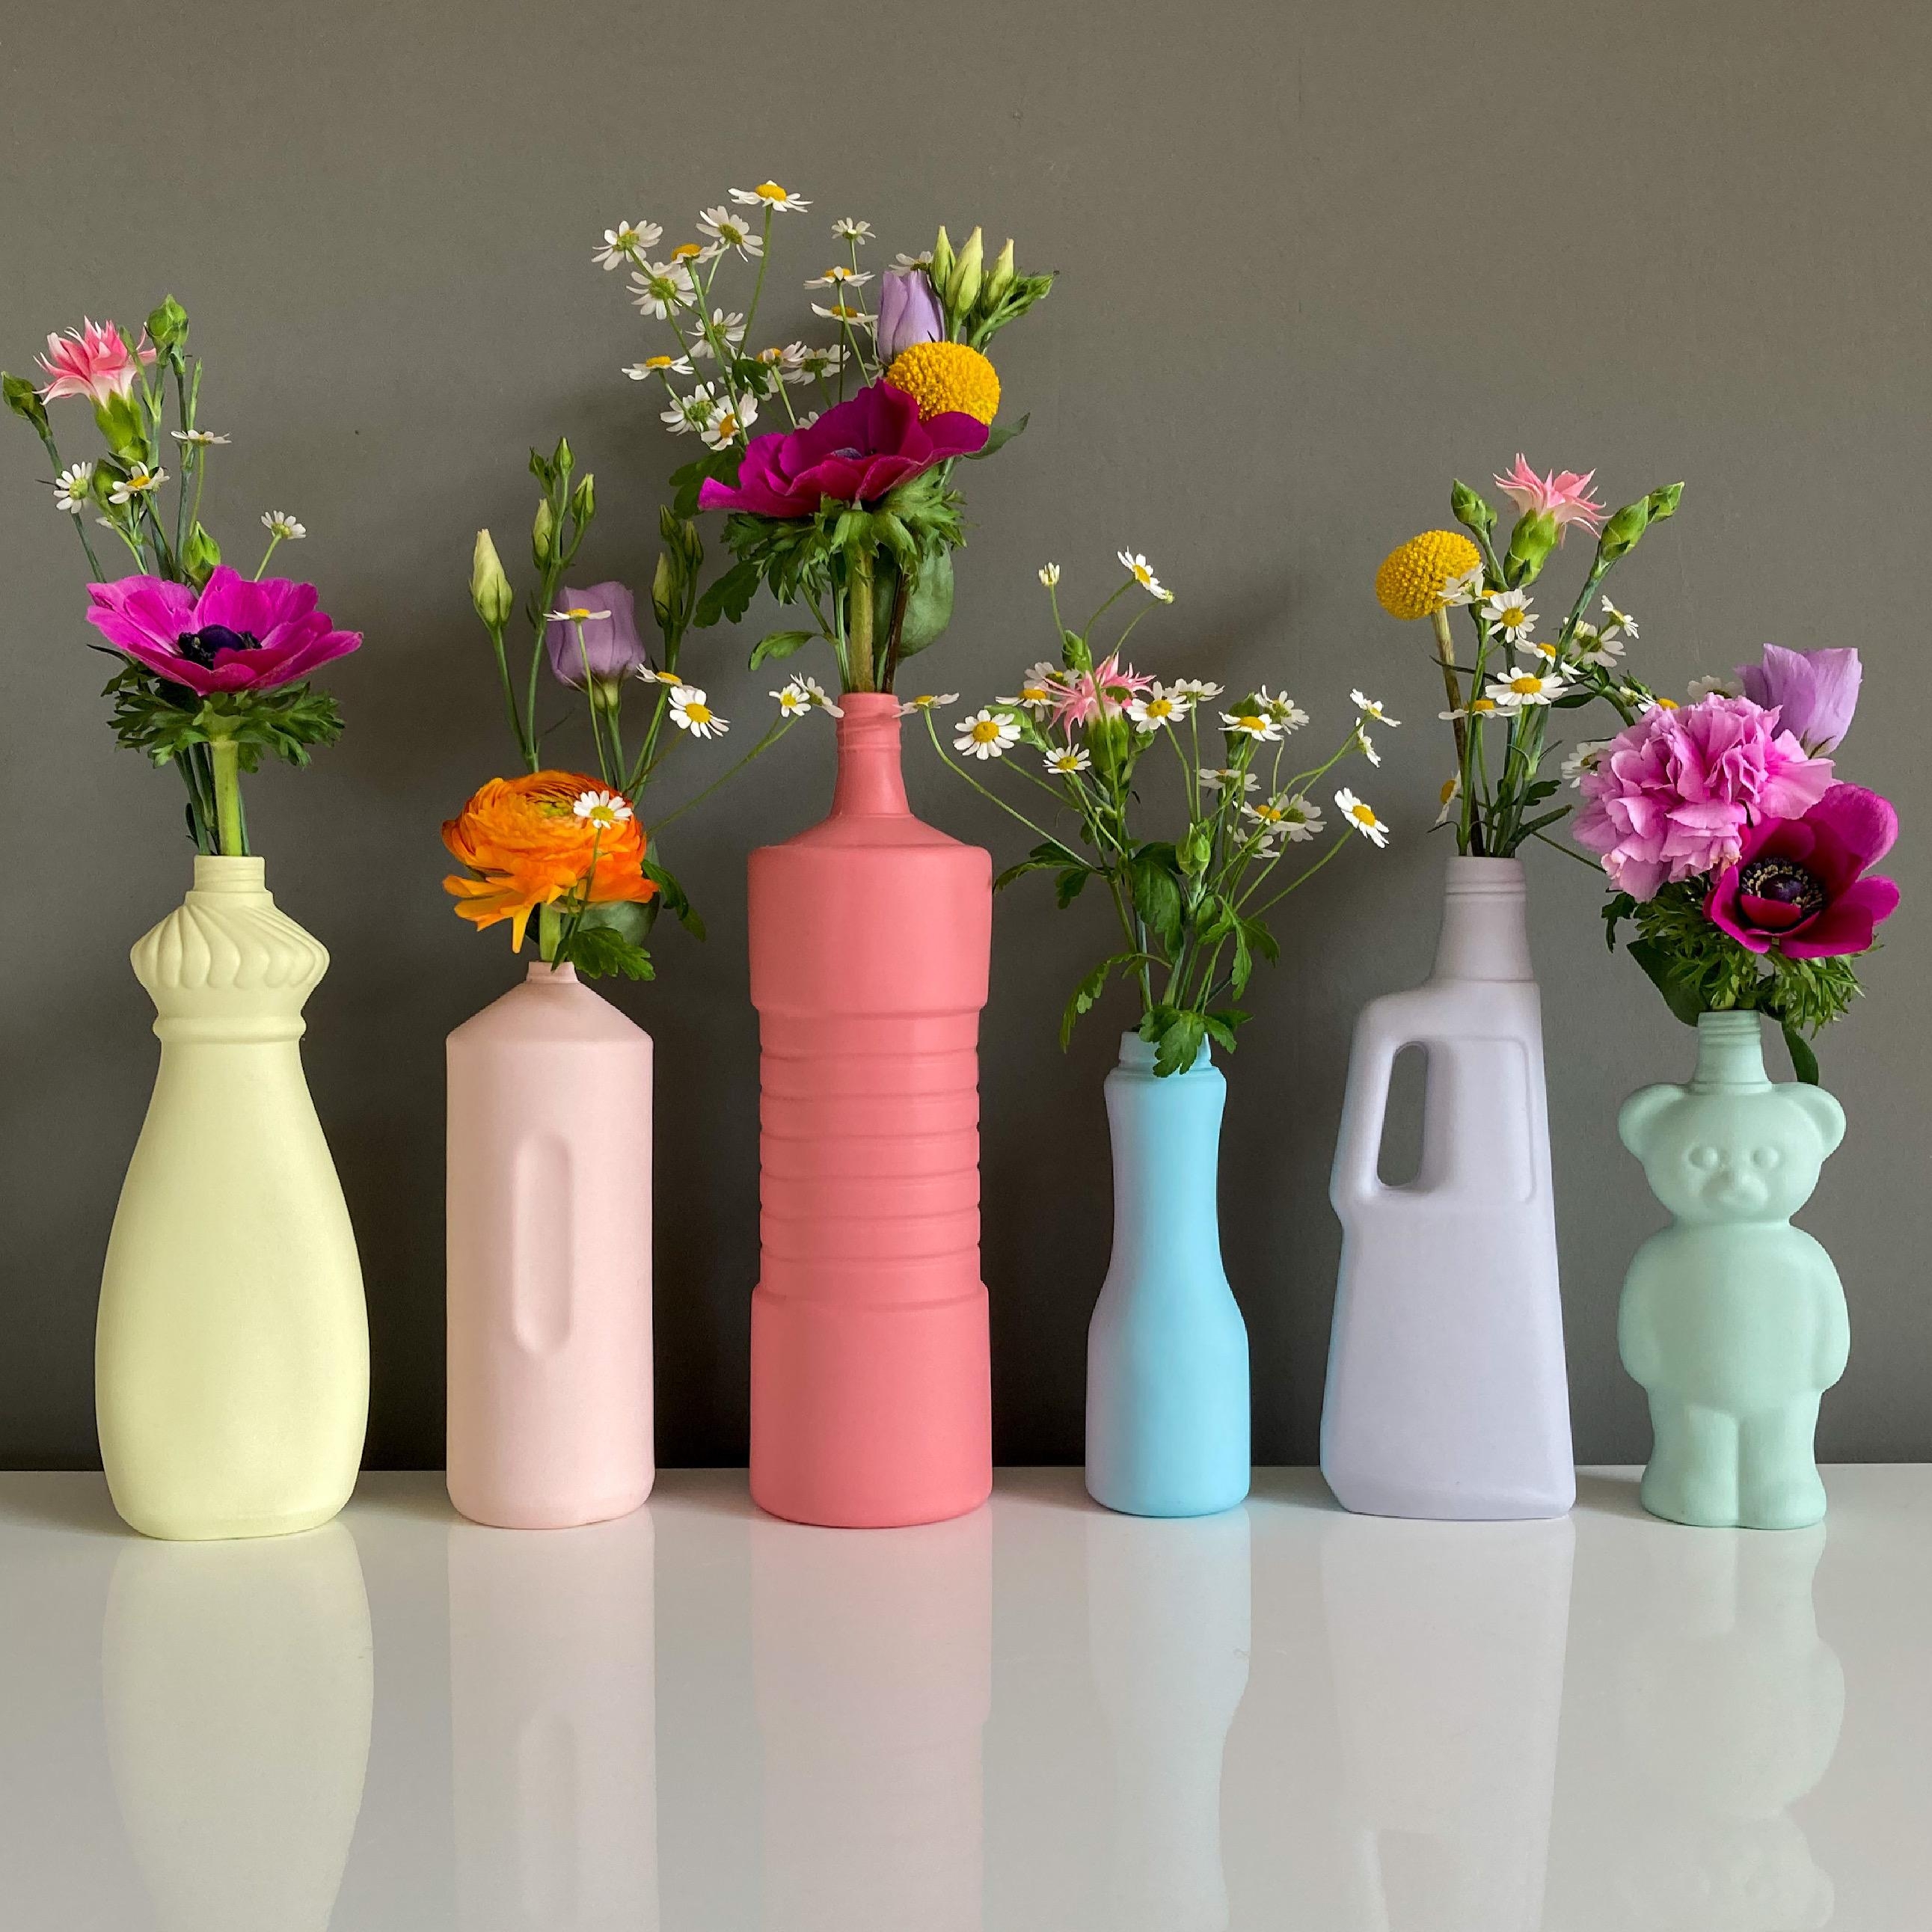 Vasenparade. #vasen#vasenliebe#blumen#blumenliebe#couchliebt#couchstyle#colourfulliving#bunt